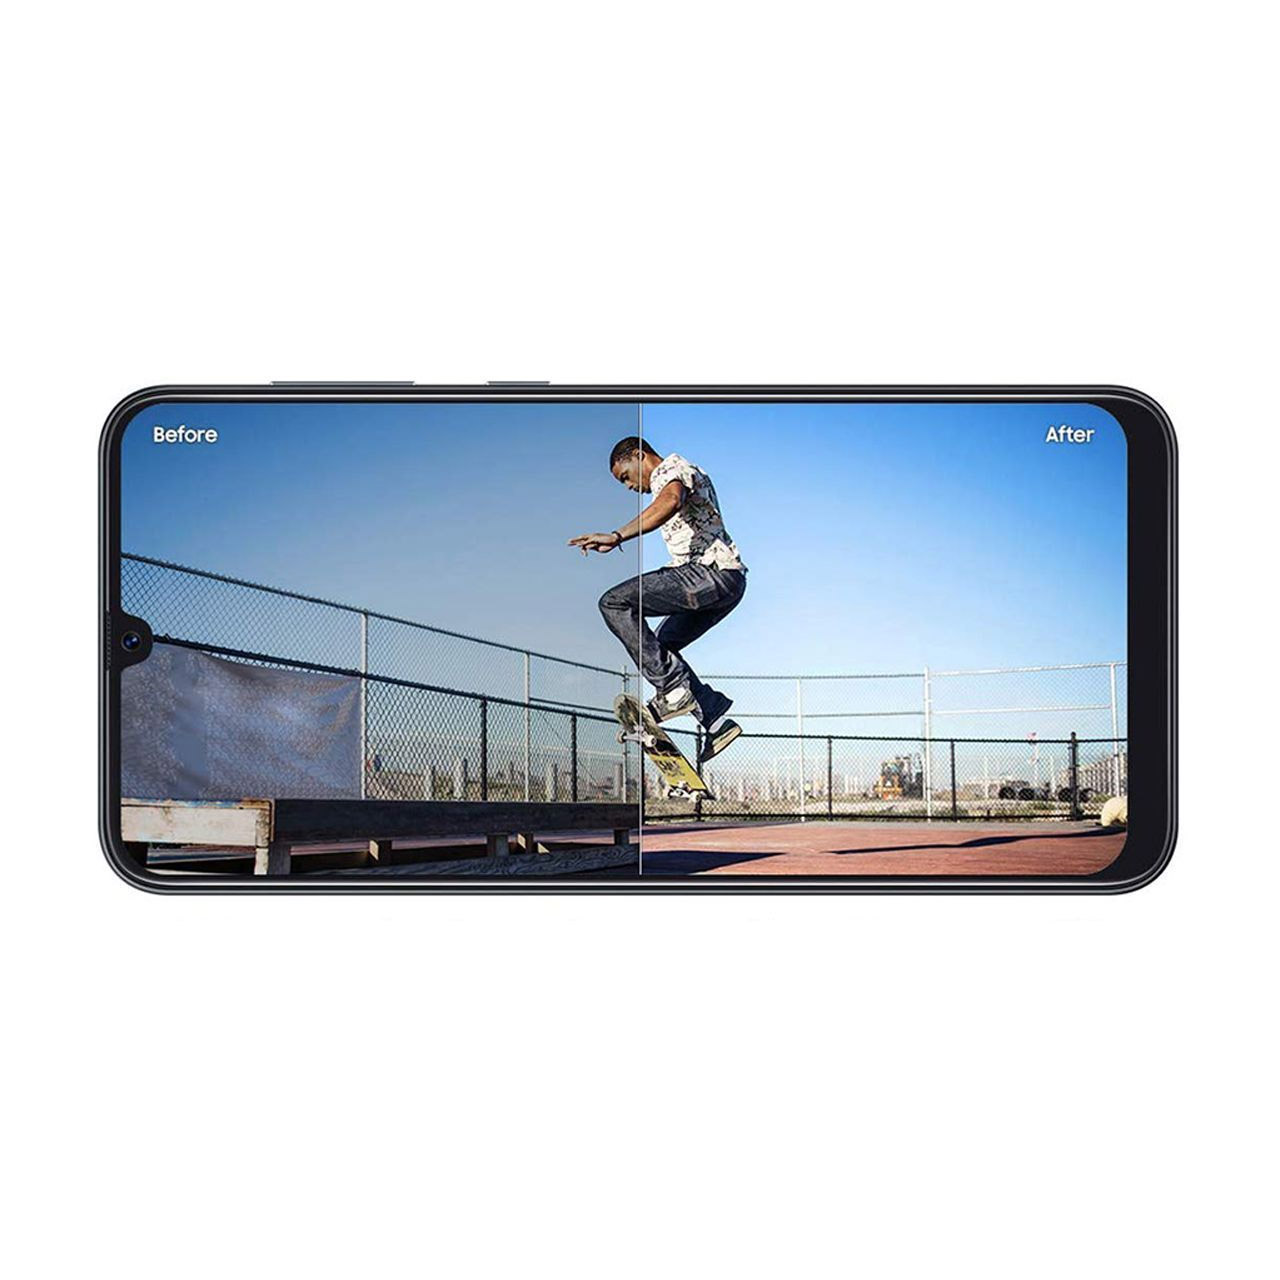 گوشی موبایل سامسونگ مدل Galaxy A50 SM-A505F/DS دو سیم کارت ظرفیت 64 گیگابایت همراه با رم 4 گیگابایت